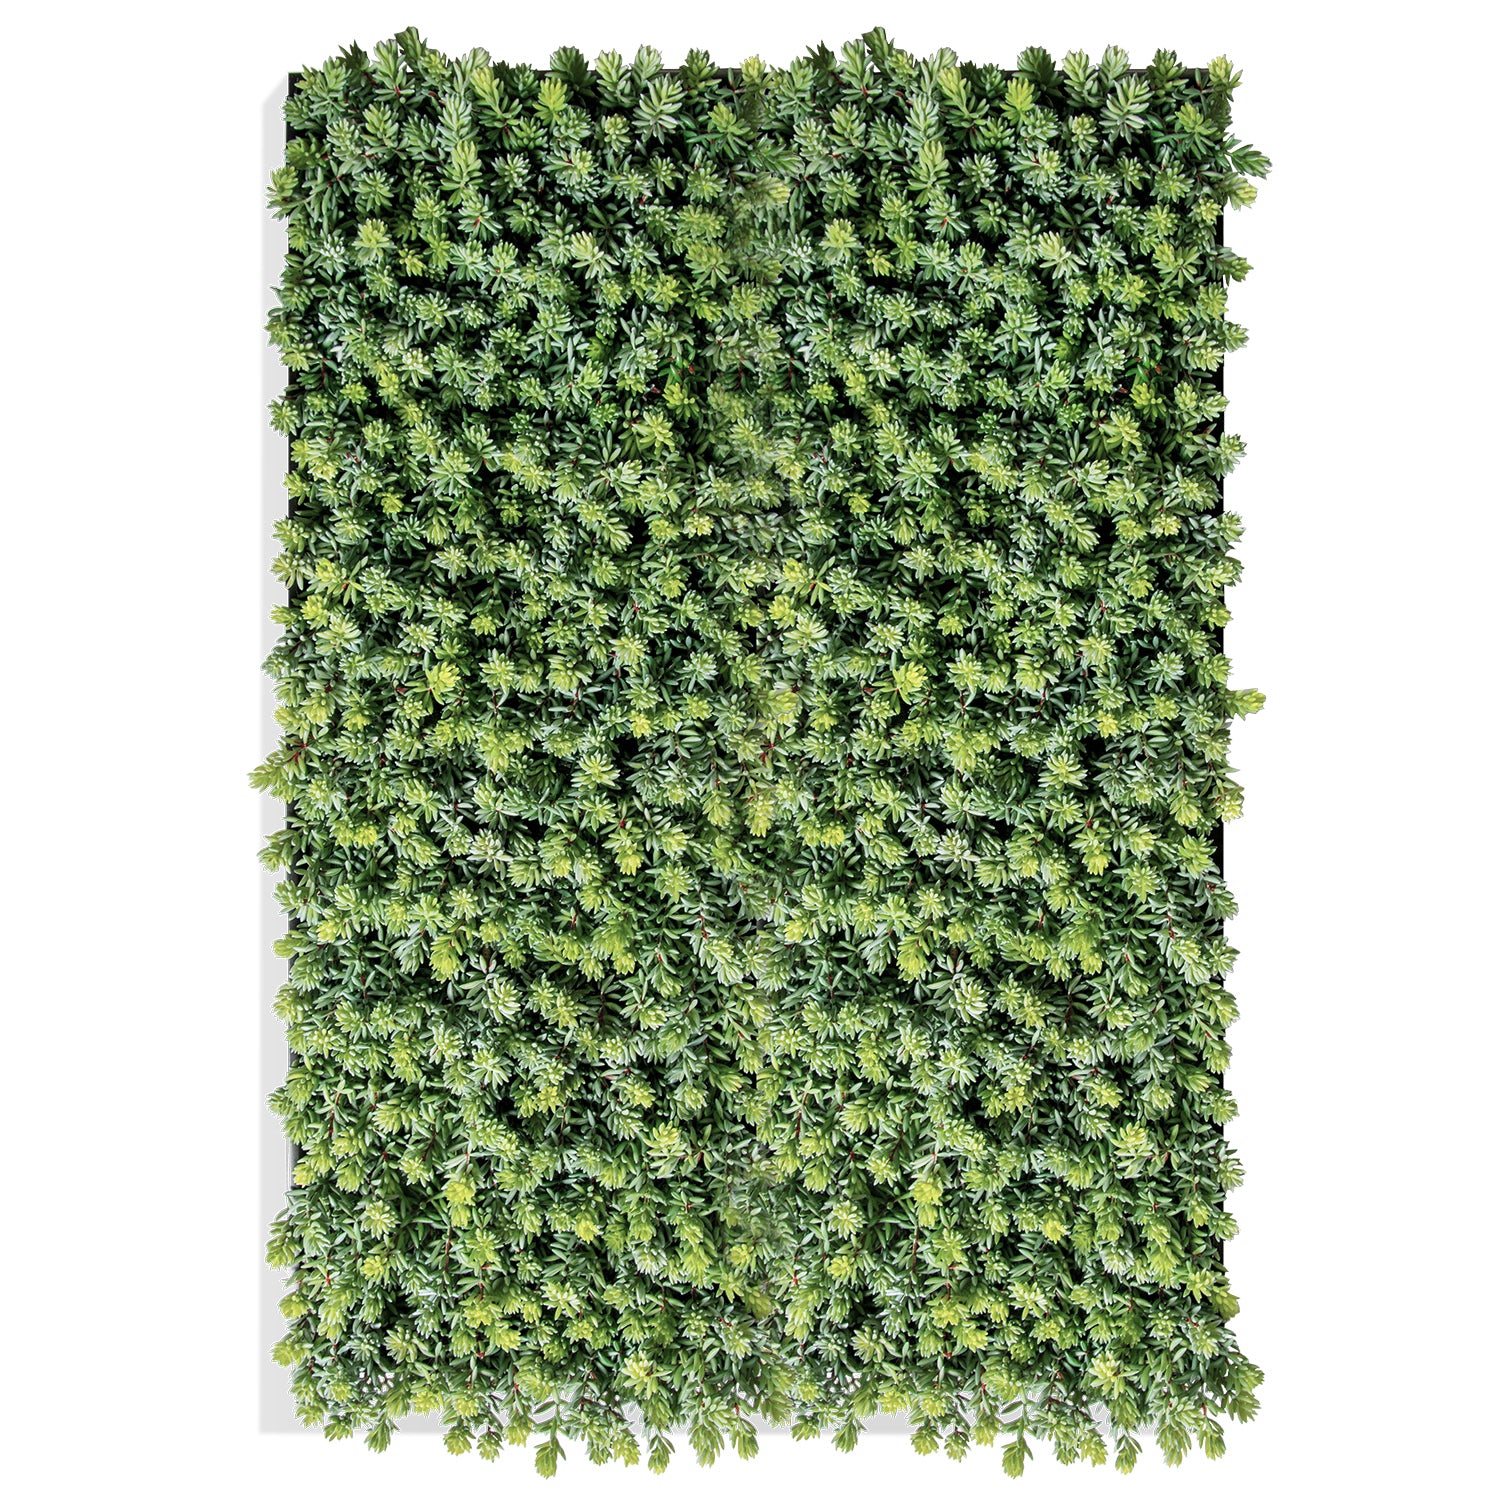 Succulent:  Sedum Album, Green hanging